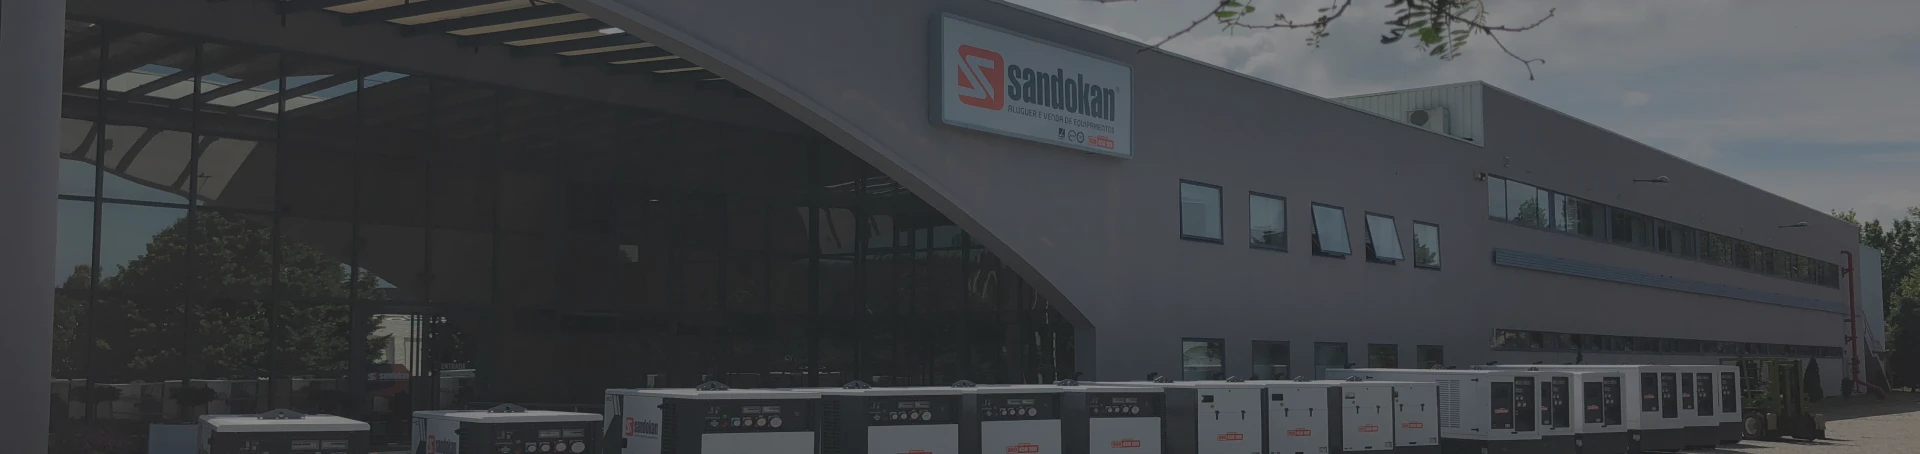 sandokan-aluguer-equipamentos